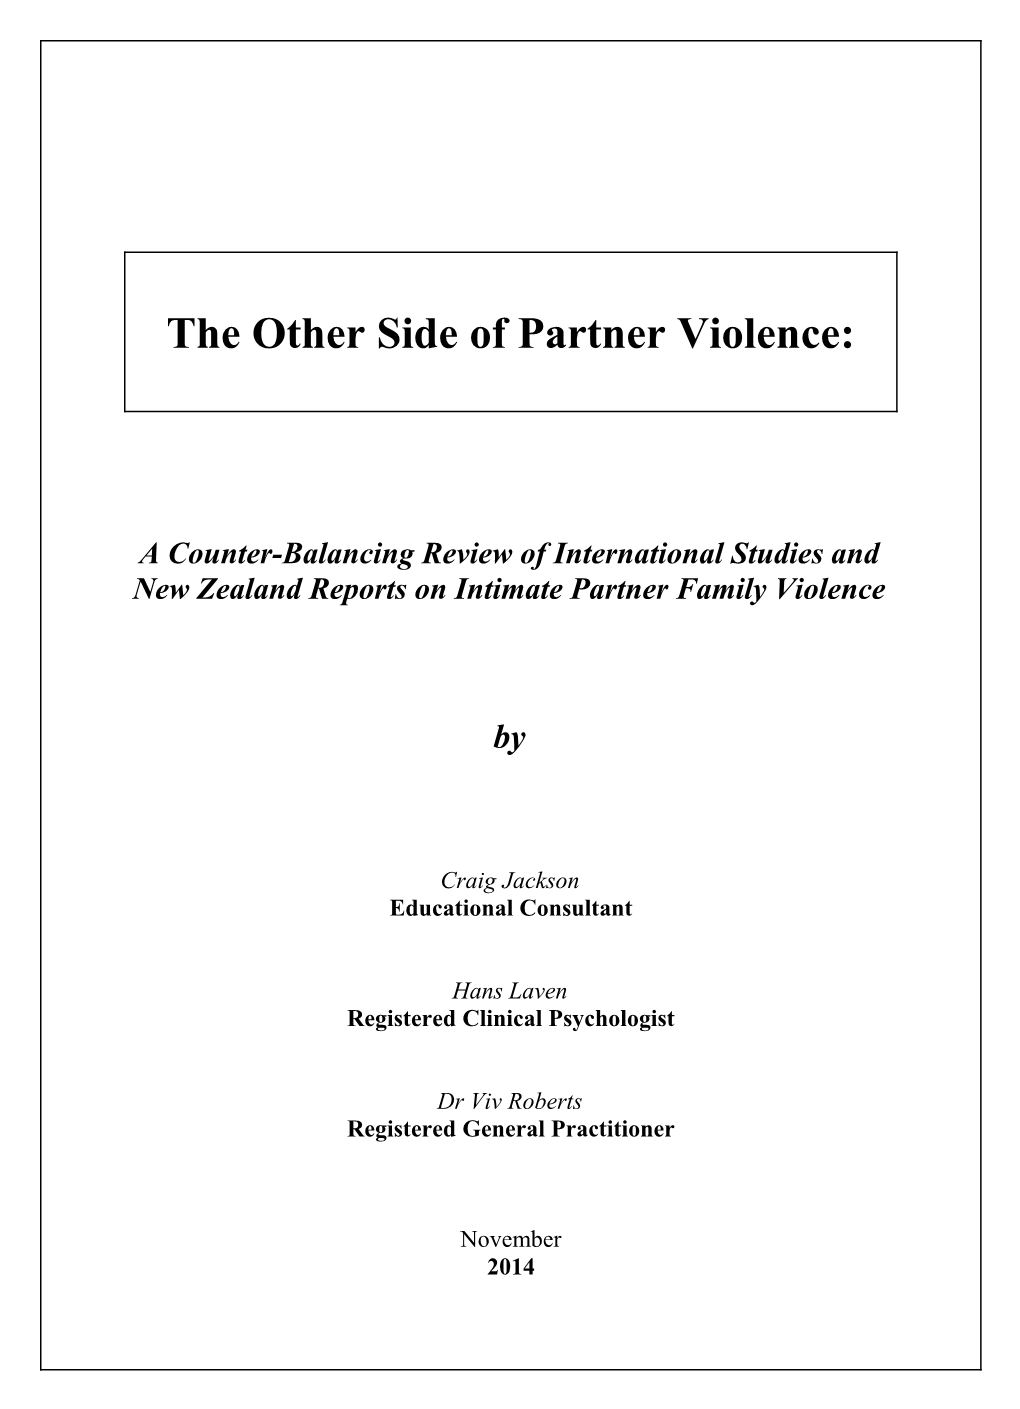 The Other Side Of Partner Violence